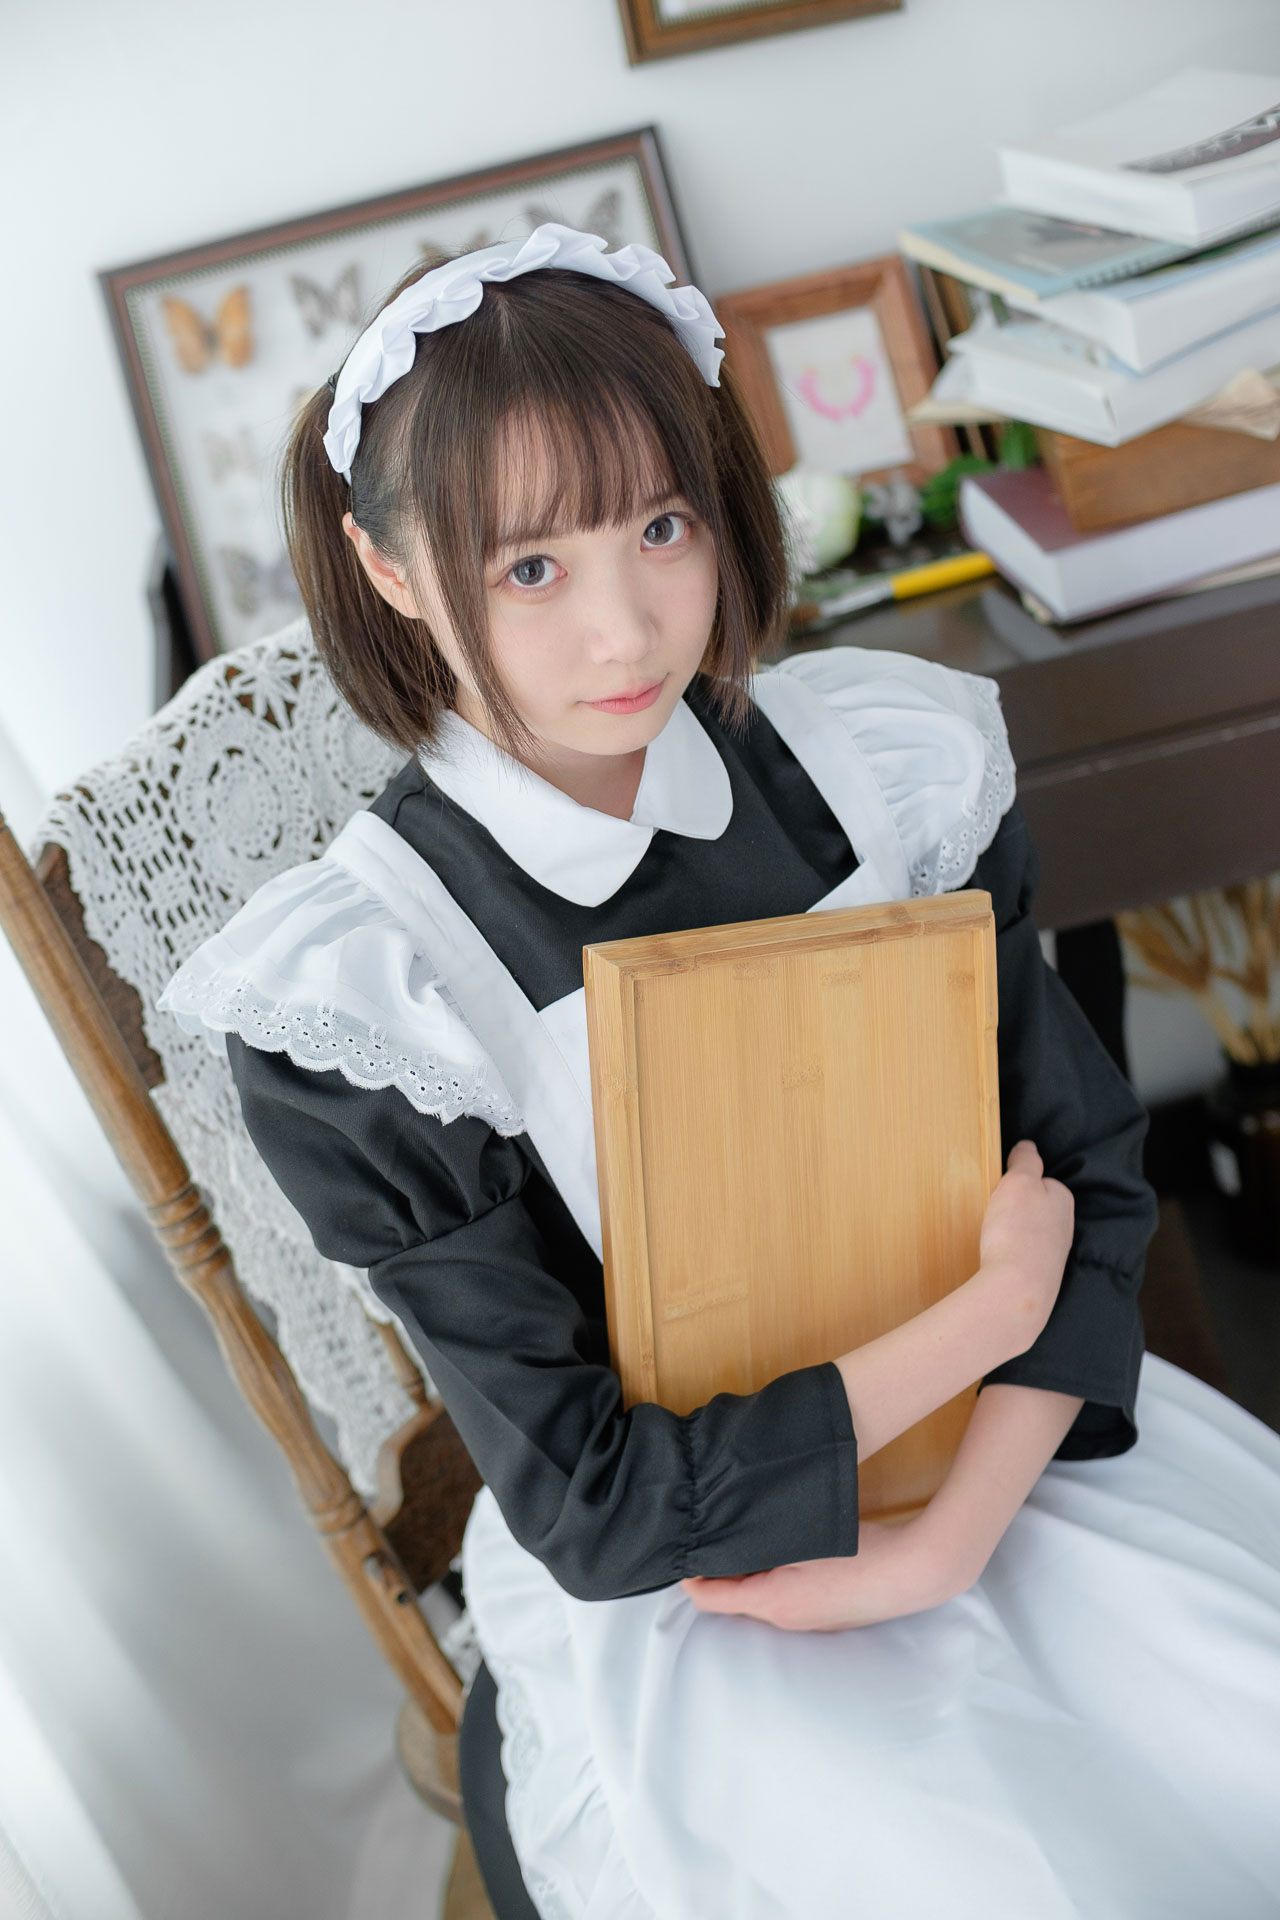 【SSR系列】森萝财团写真 SSR-005 优雅白丝袜女仆装[85图-0视频-476MB] 第1张